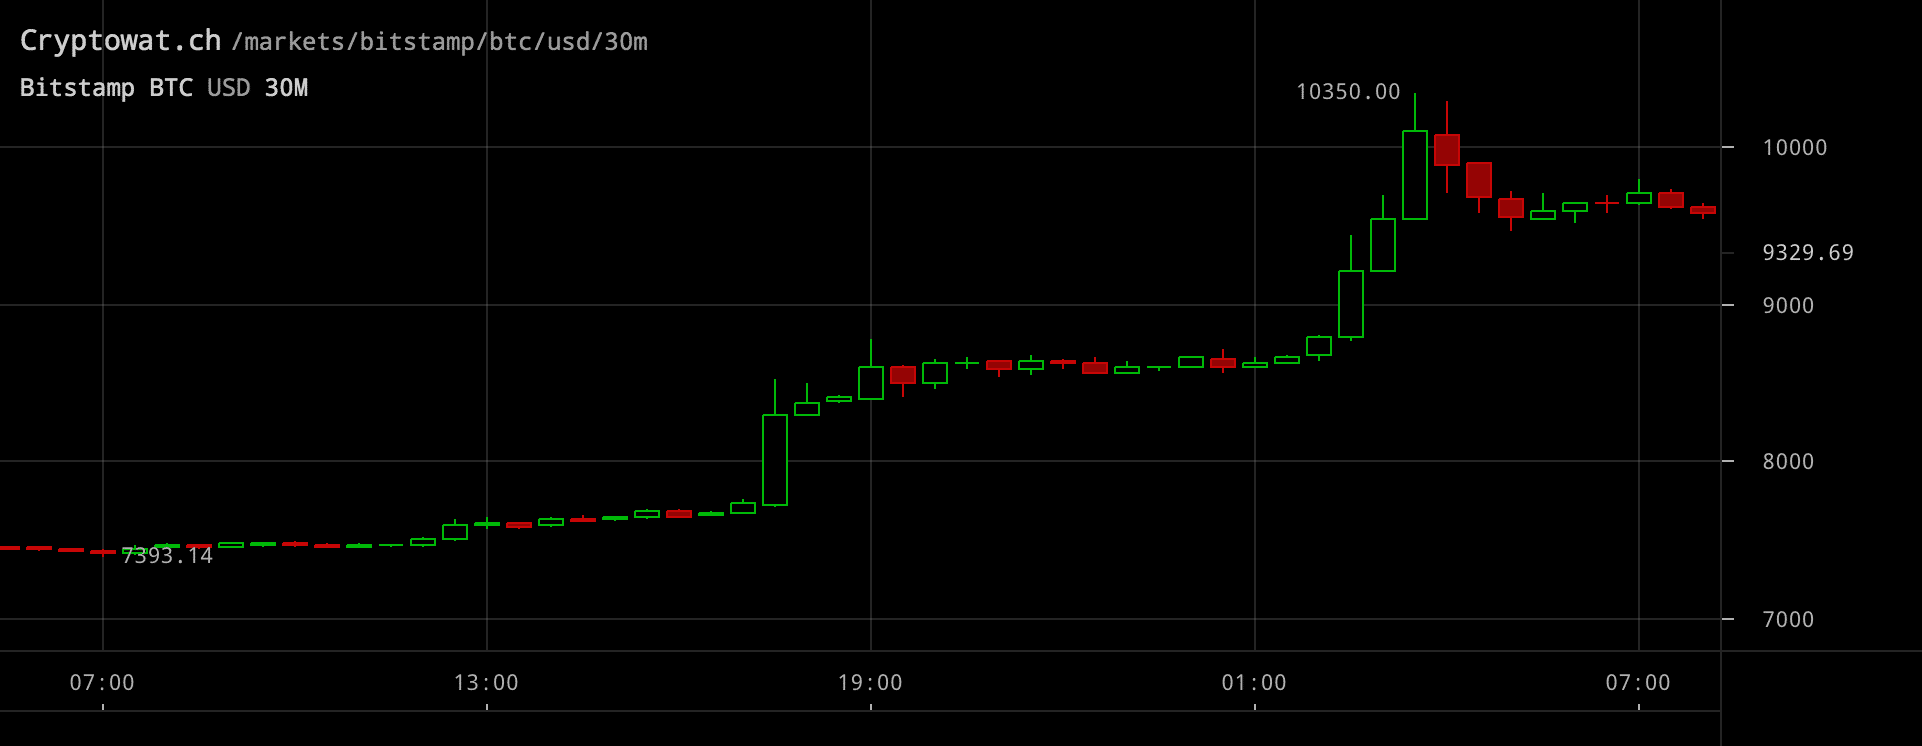 Bitcoinpriset inställt på 30-minutersvy.